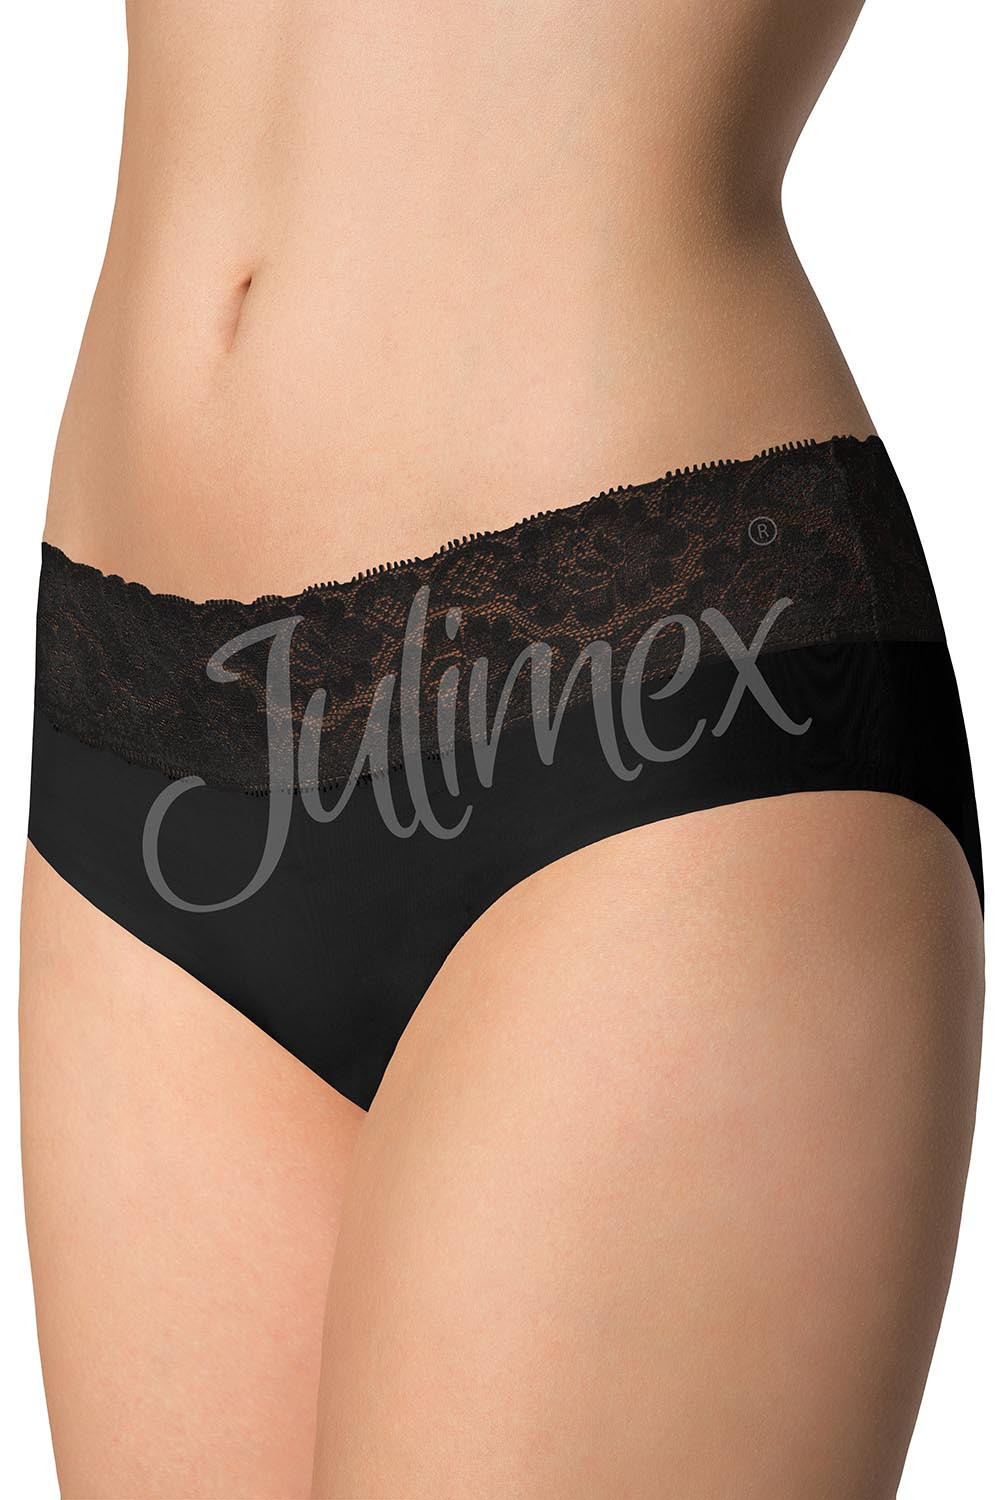 Julimex Hipster panty kolor:czarny M